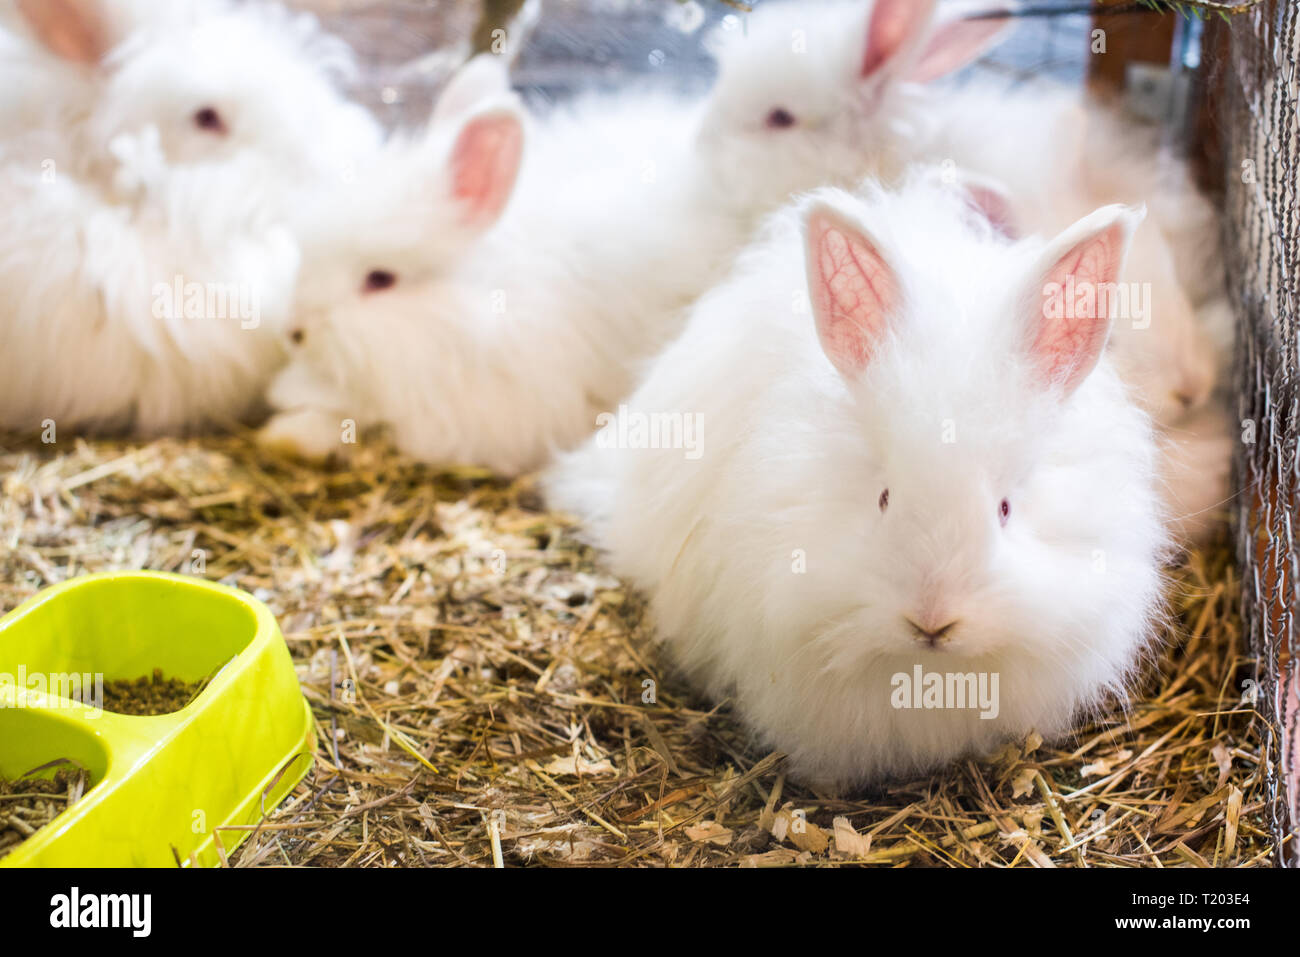 Vier lustig flauschige Angora Kaninchen mit seidig und weich weißer Wolle  in einem Käfig Stockfotografie - Alamy